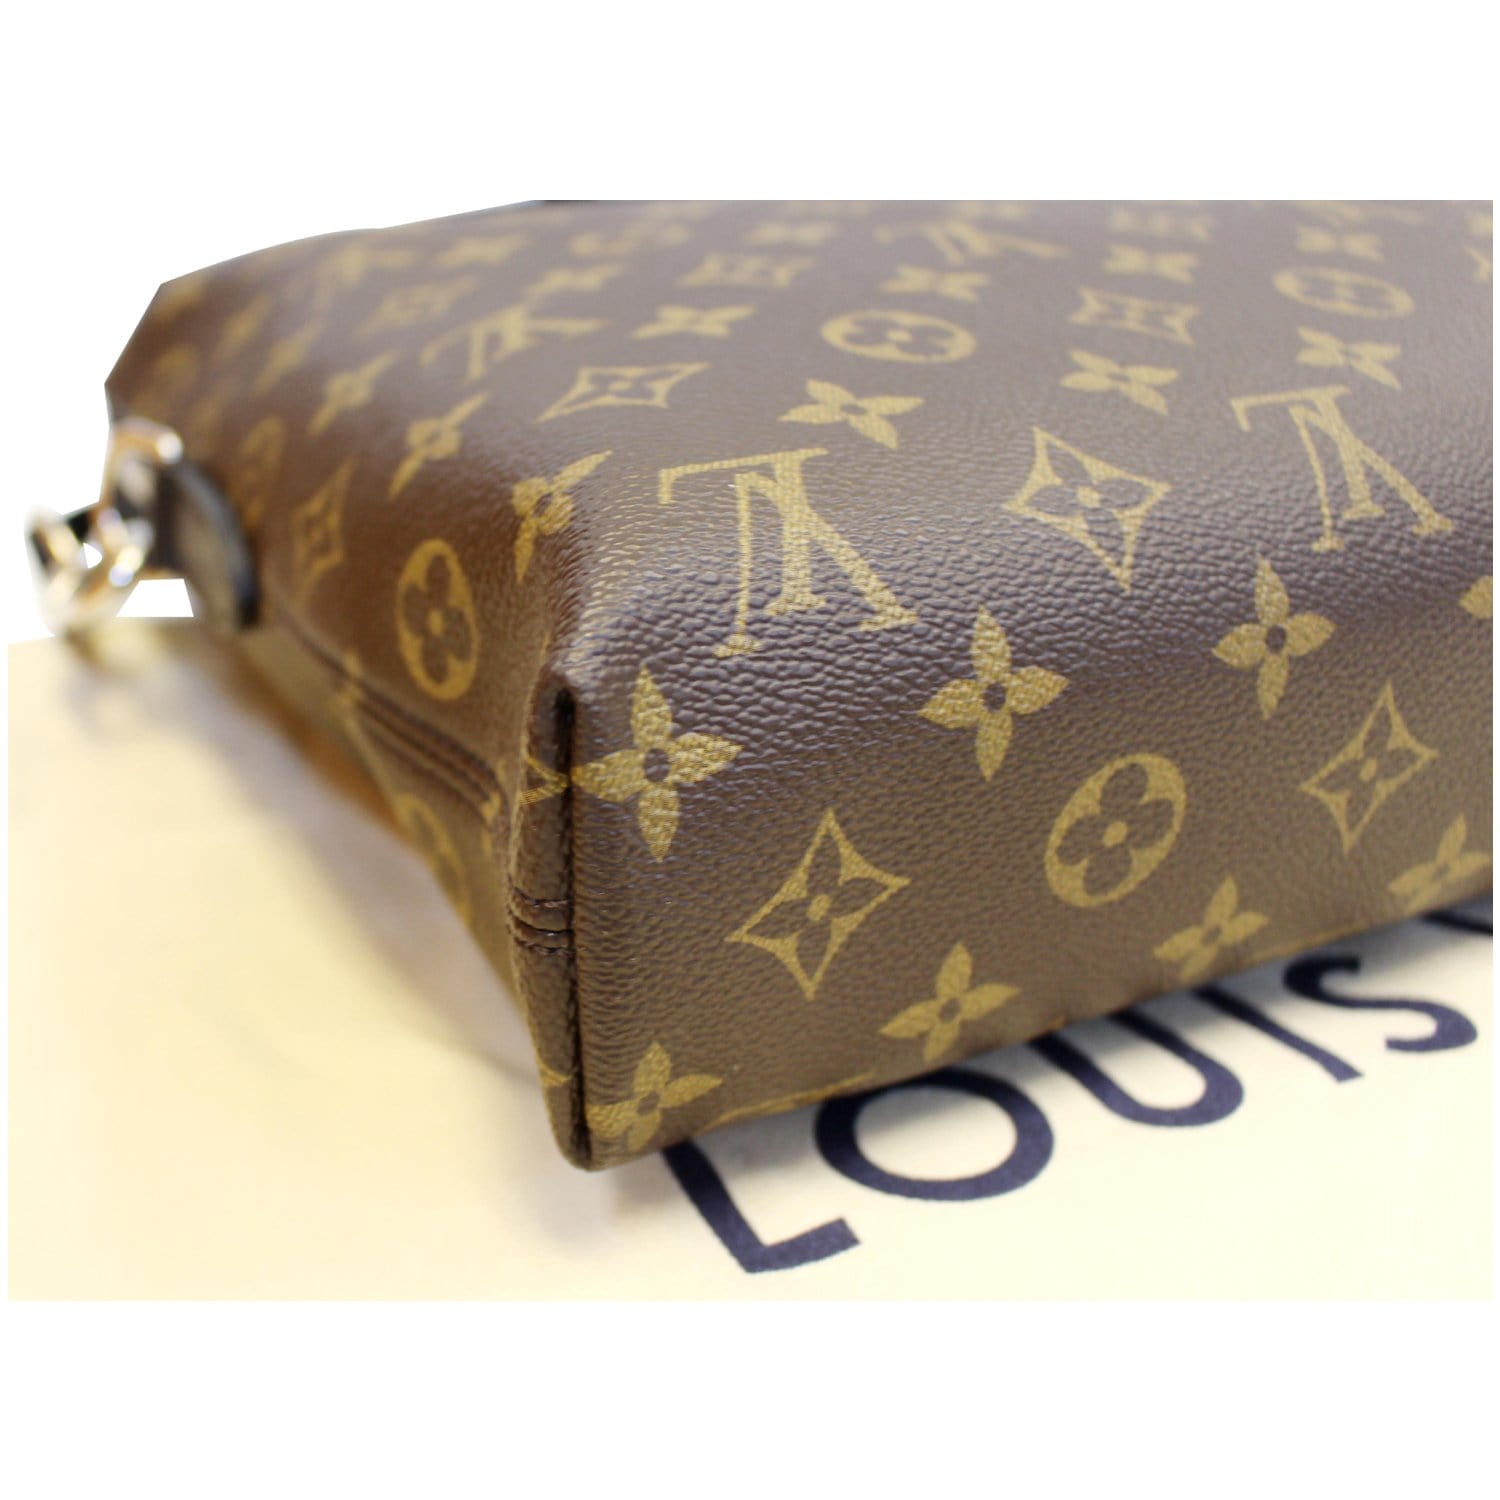 Louis Vuitton Porte-Documents Jour bag 